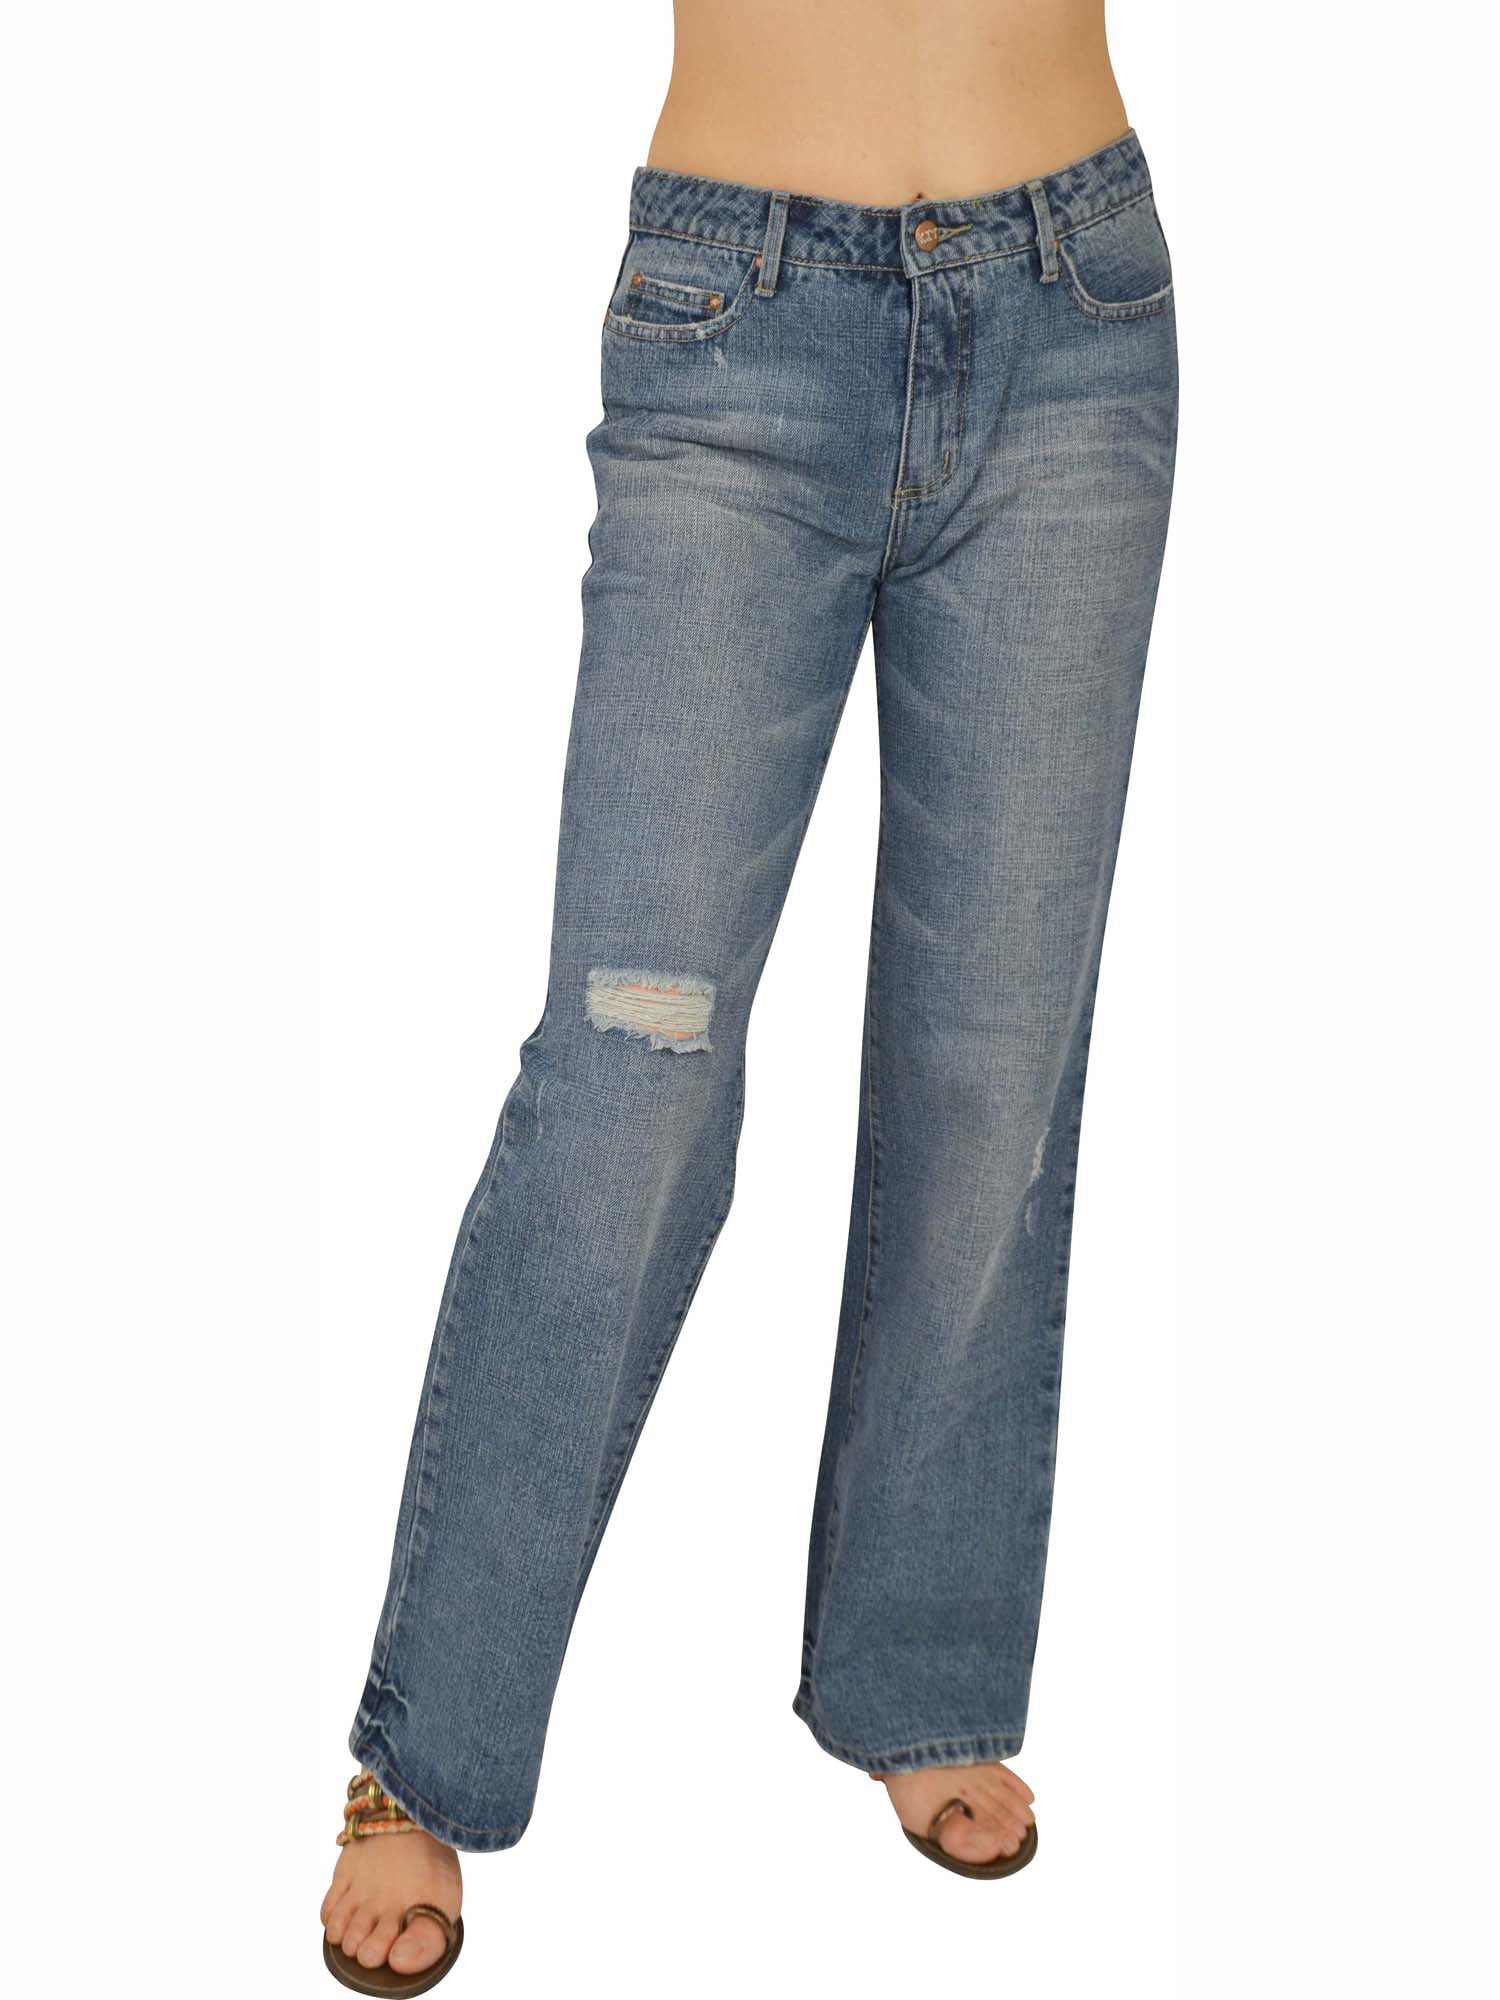 Women's 100% Cotton non-stretch Jeans #L204 size:5 - Walmart.com